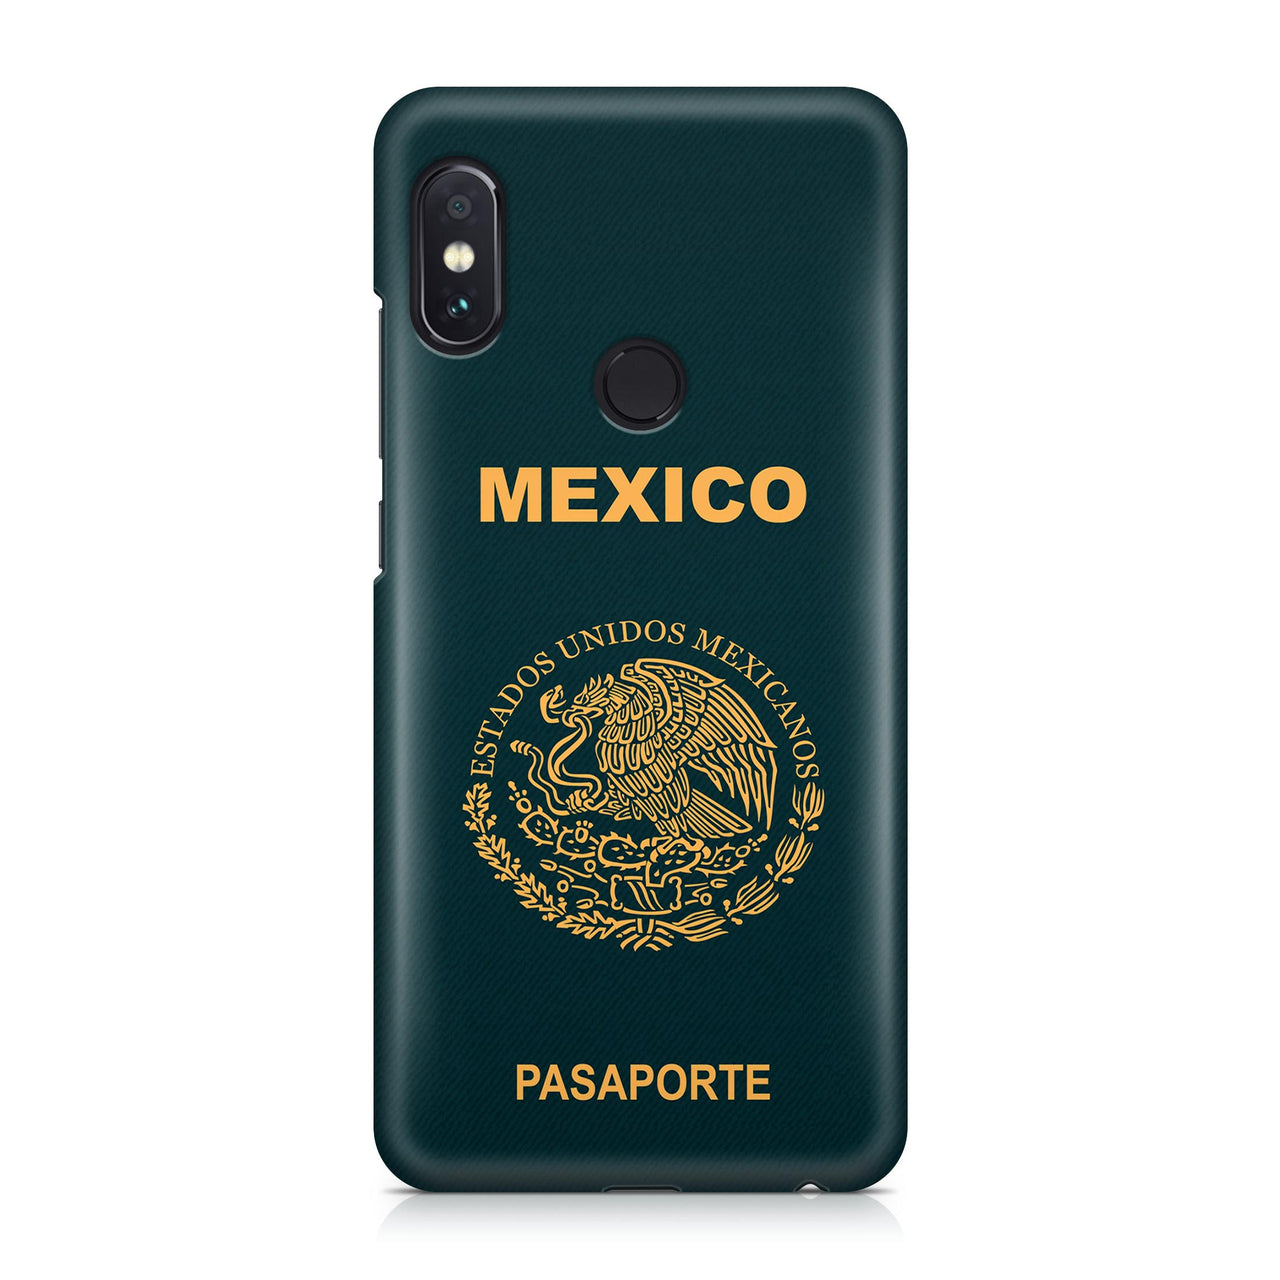 Mexico Passport Designed Xiaomi Cases